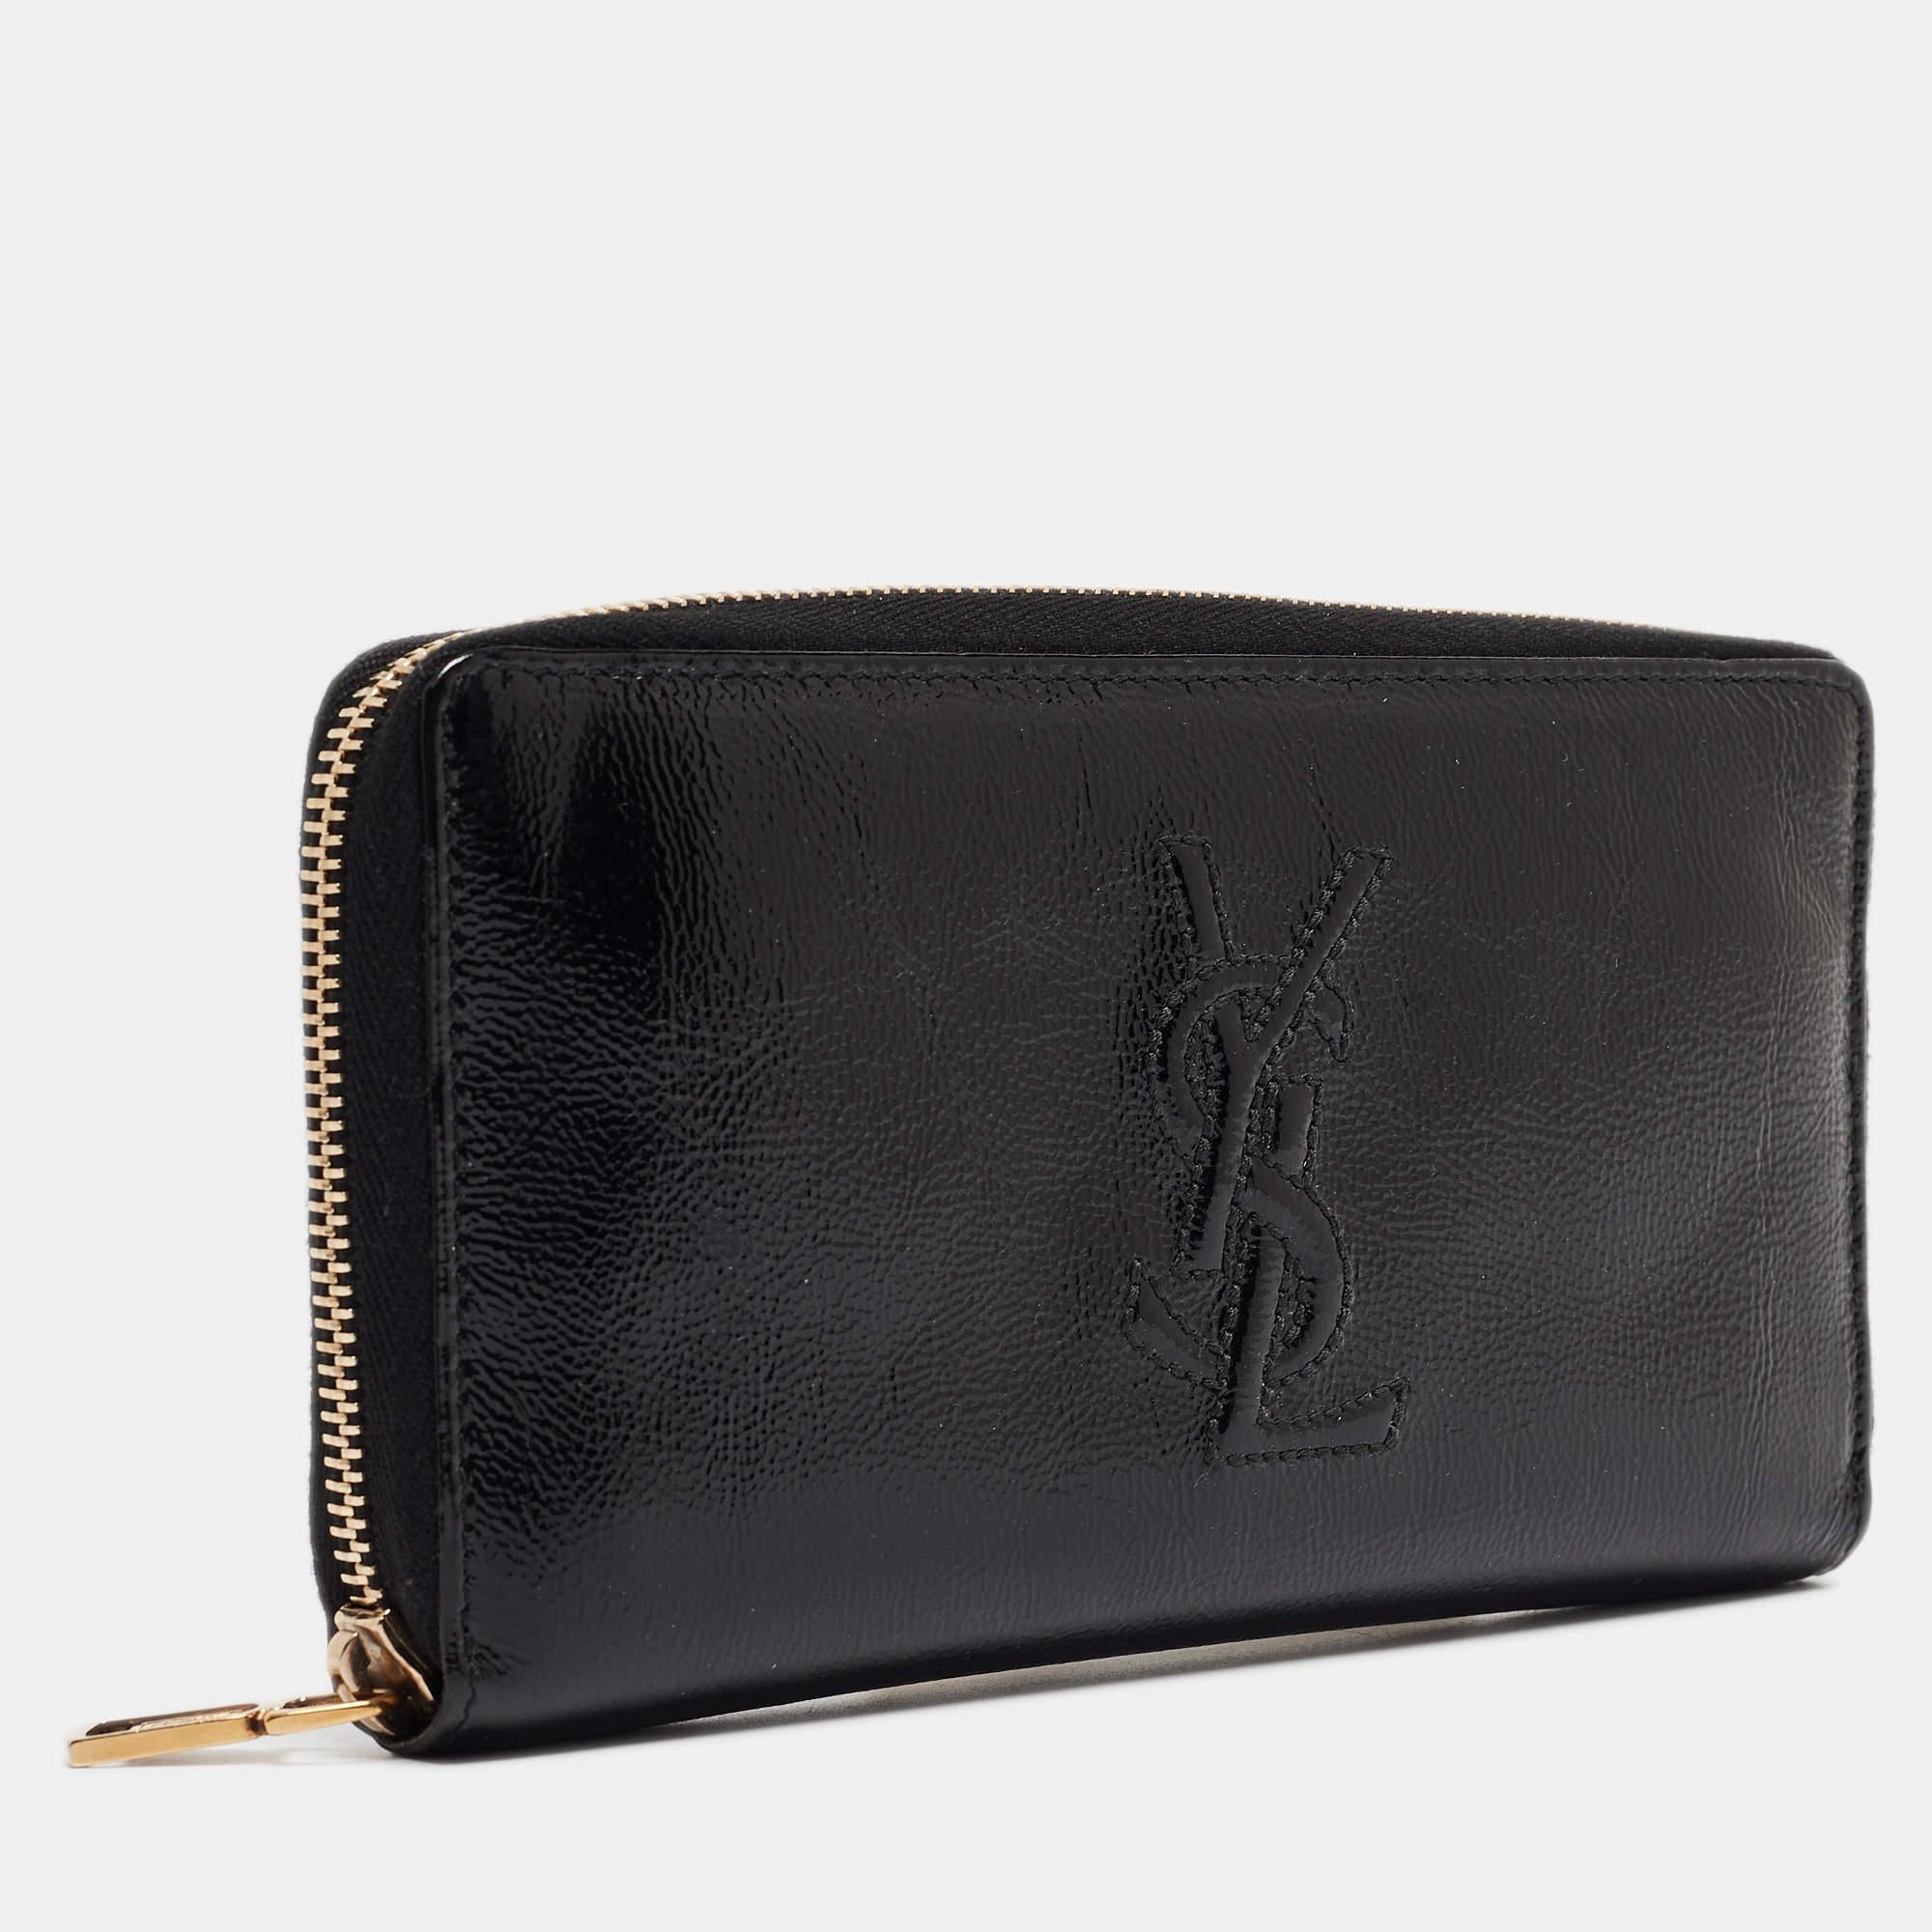 Ein Portemonnaie sollte nicht nur gut aussehen, sondern auch funktional sein, so wie diese hübsche Belle De Jour Geldbörse von Yves Saint Laurent. Die aus schwarzem Lackleder gefertigte Kreation verfügt über eine Innenausstattung aus Ledergewebe und